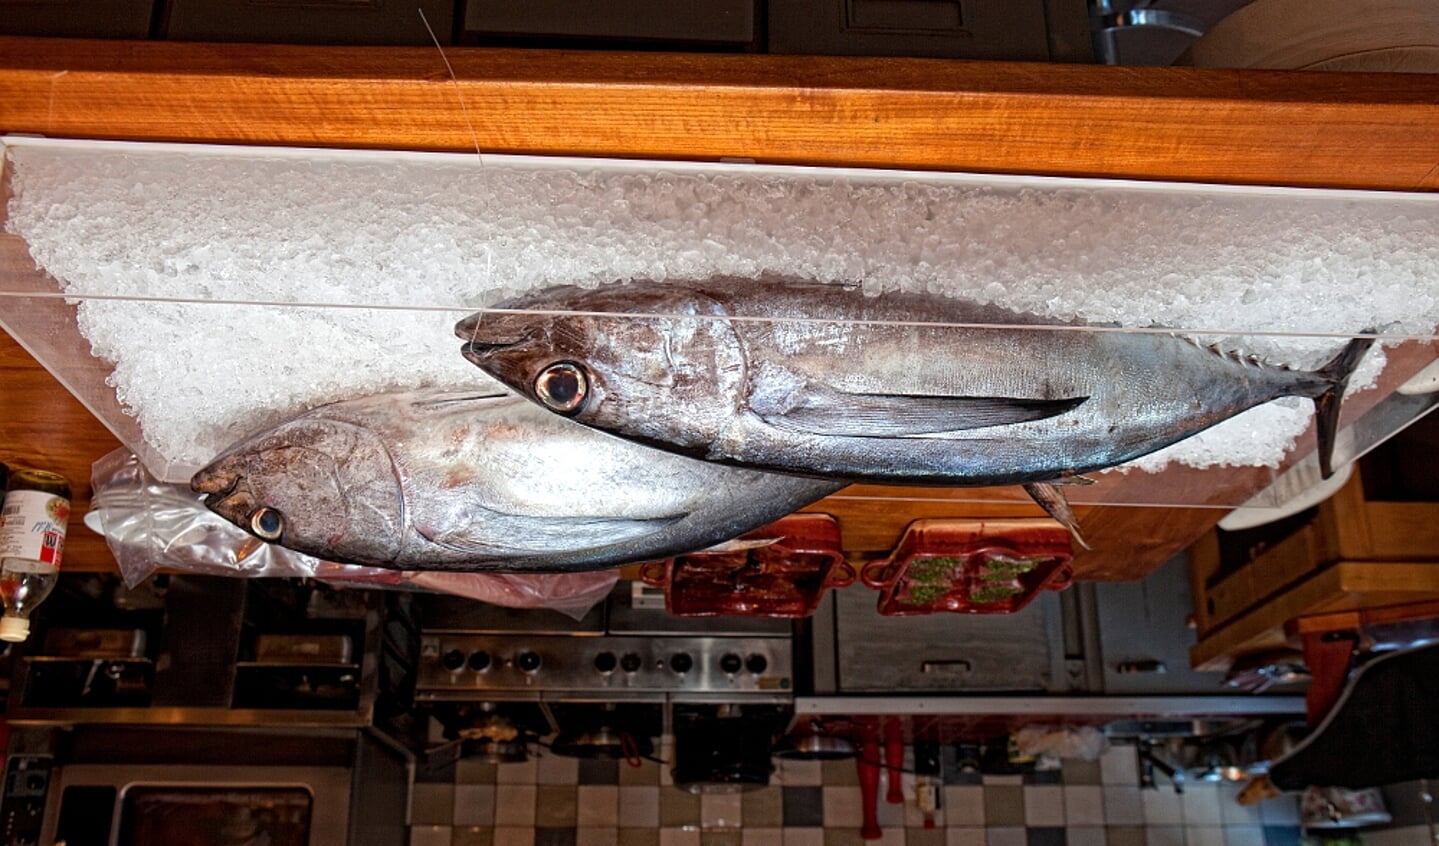  Tonijn was de Vis van de Maand in november 2016. Voor december is de sint-jakobsschelp Vis van de Maand.